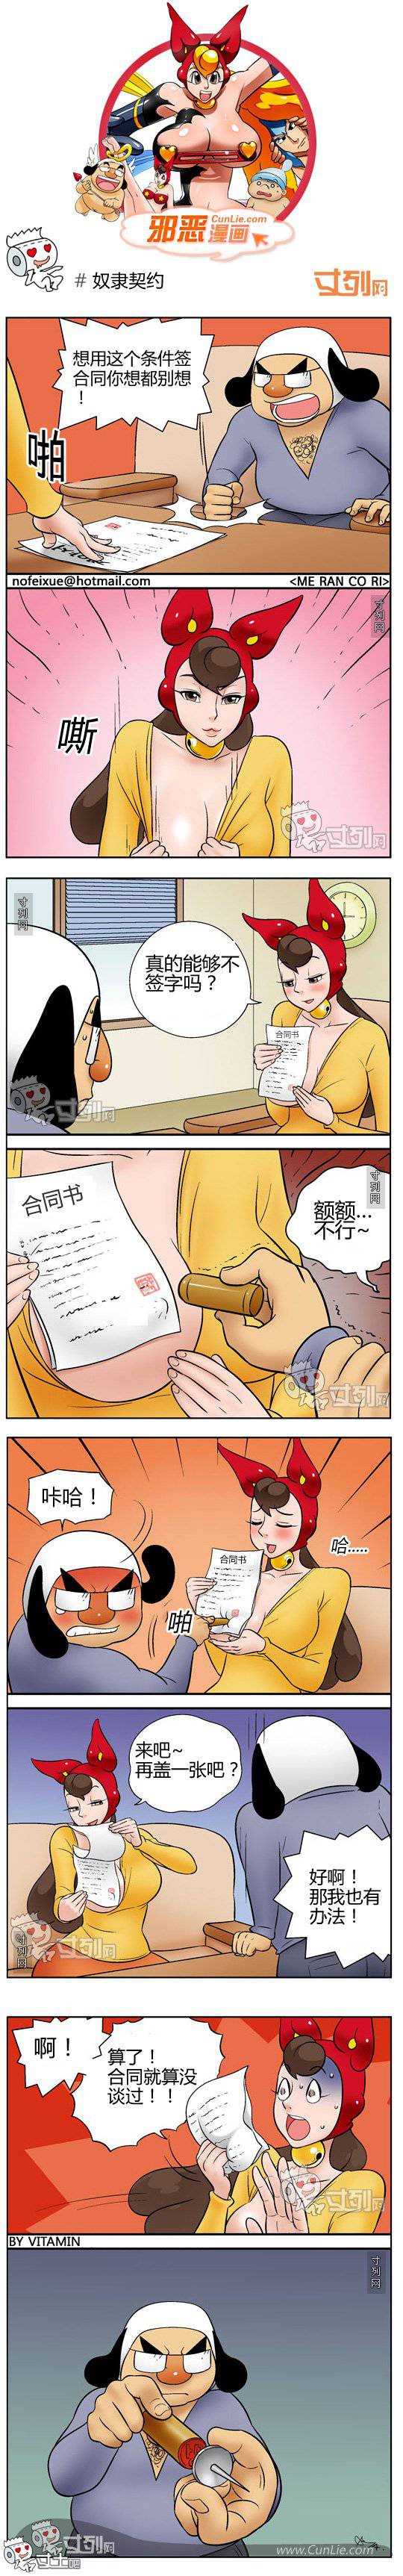 邪恶漫画爆笑囧图第191刊：诱惑